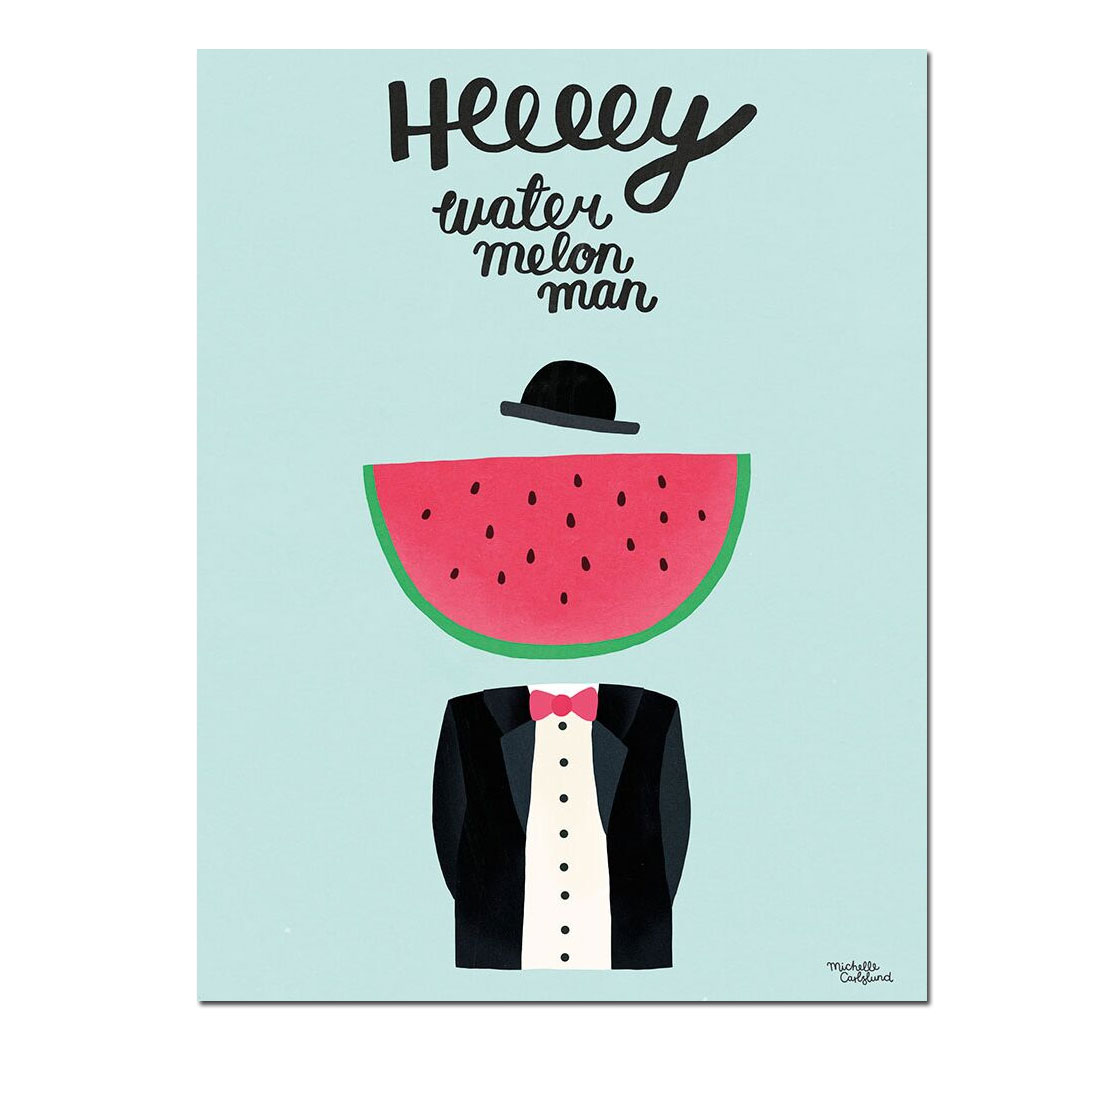 Michelle Carlslund - Water melon man Poster, A3